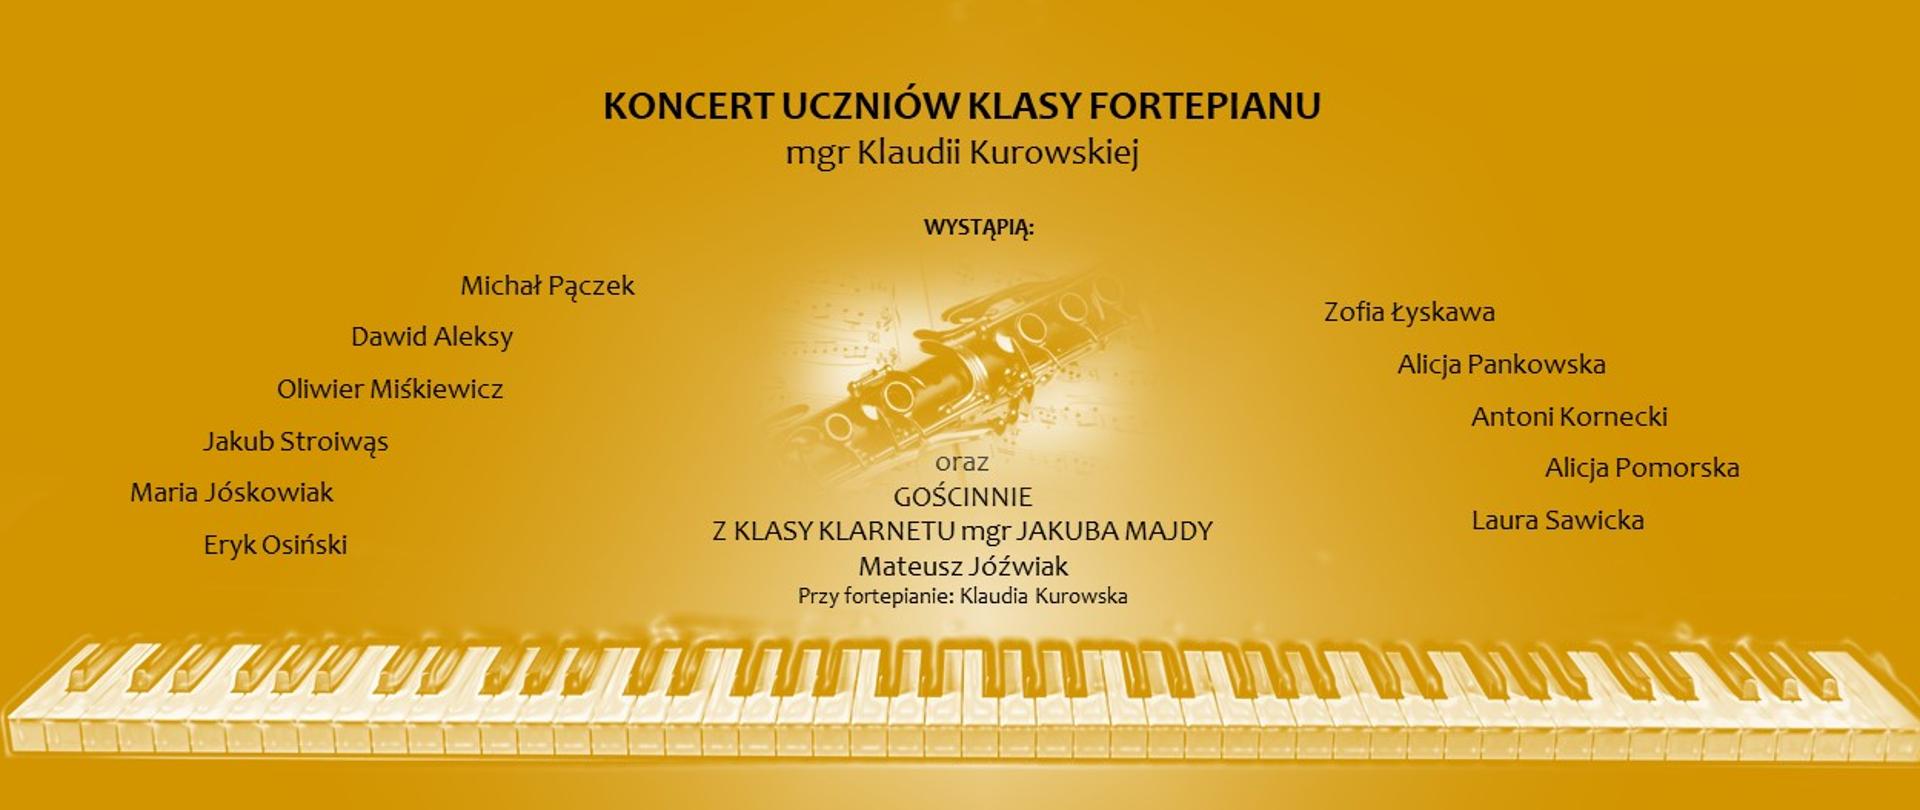 Plakat informujący o Koncercie Uczniów Klasy Fortepianu mgr Klaudii Kurowskiej przedstawia imiona i nazwiska występujących uczniów-pianistów oraz informację o gościnnym występie klarnecisty. Plakat jest w kolorze żółtym, w tle pojawia się delikatna grafika pokazująca klarnet na tle nut; na dole na całej szerokości rozciąga się klawiatura fortepianu.